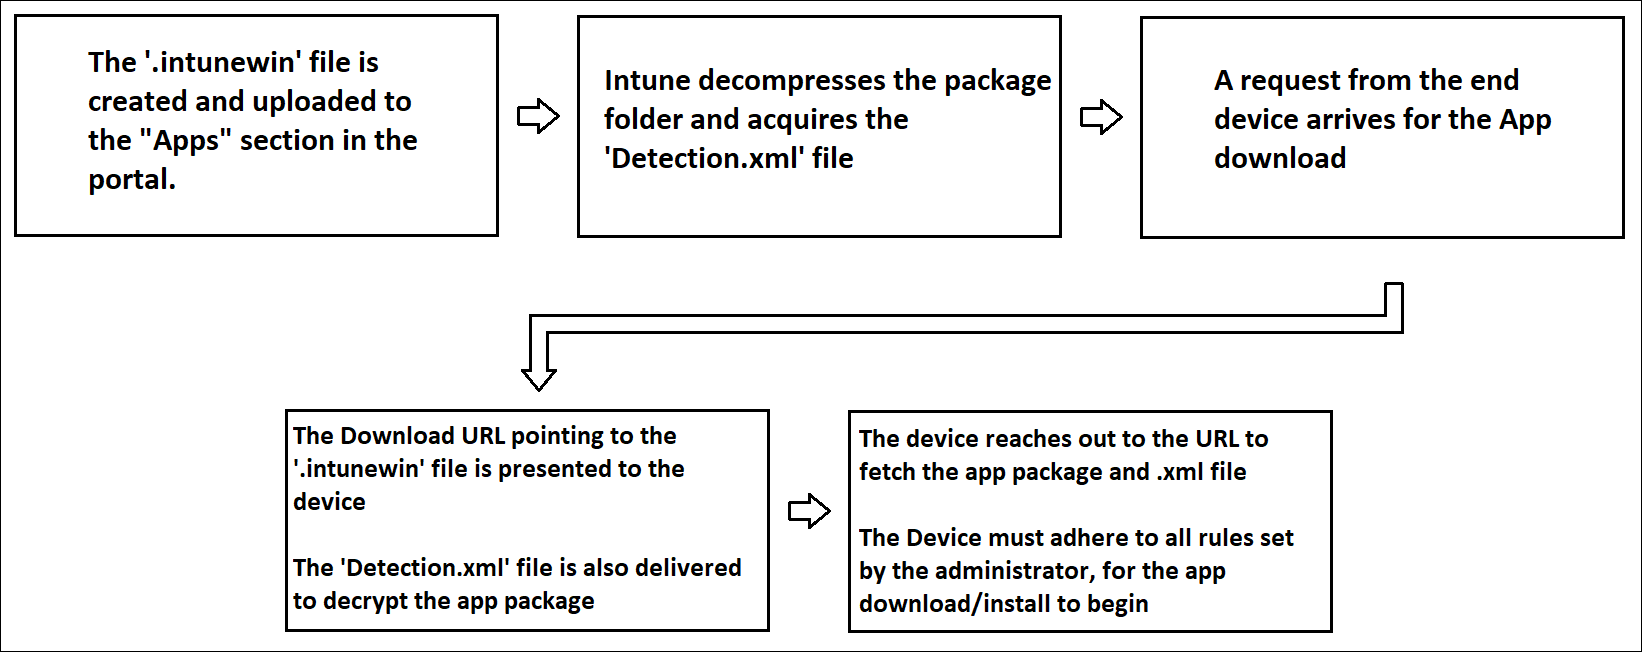 Diagrama que muestra el flujo de la entrega de una aplicación Win32 a un dispositivo a través de Intune.